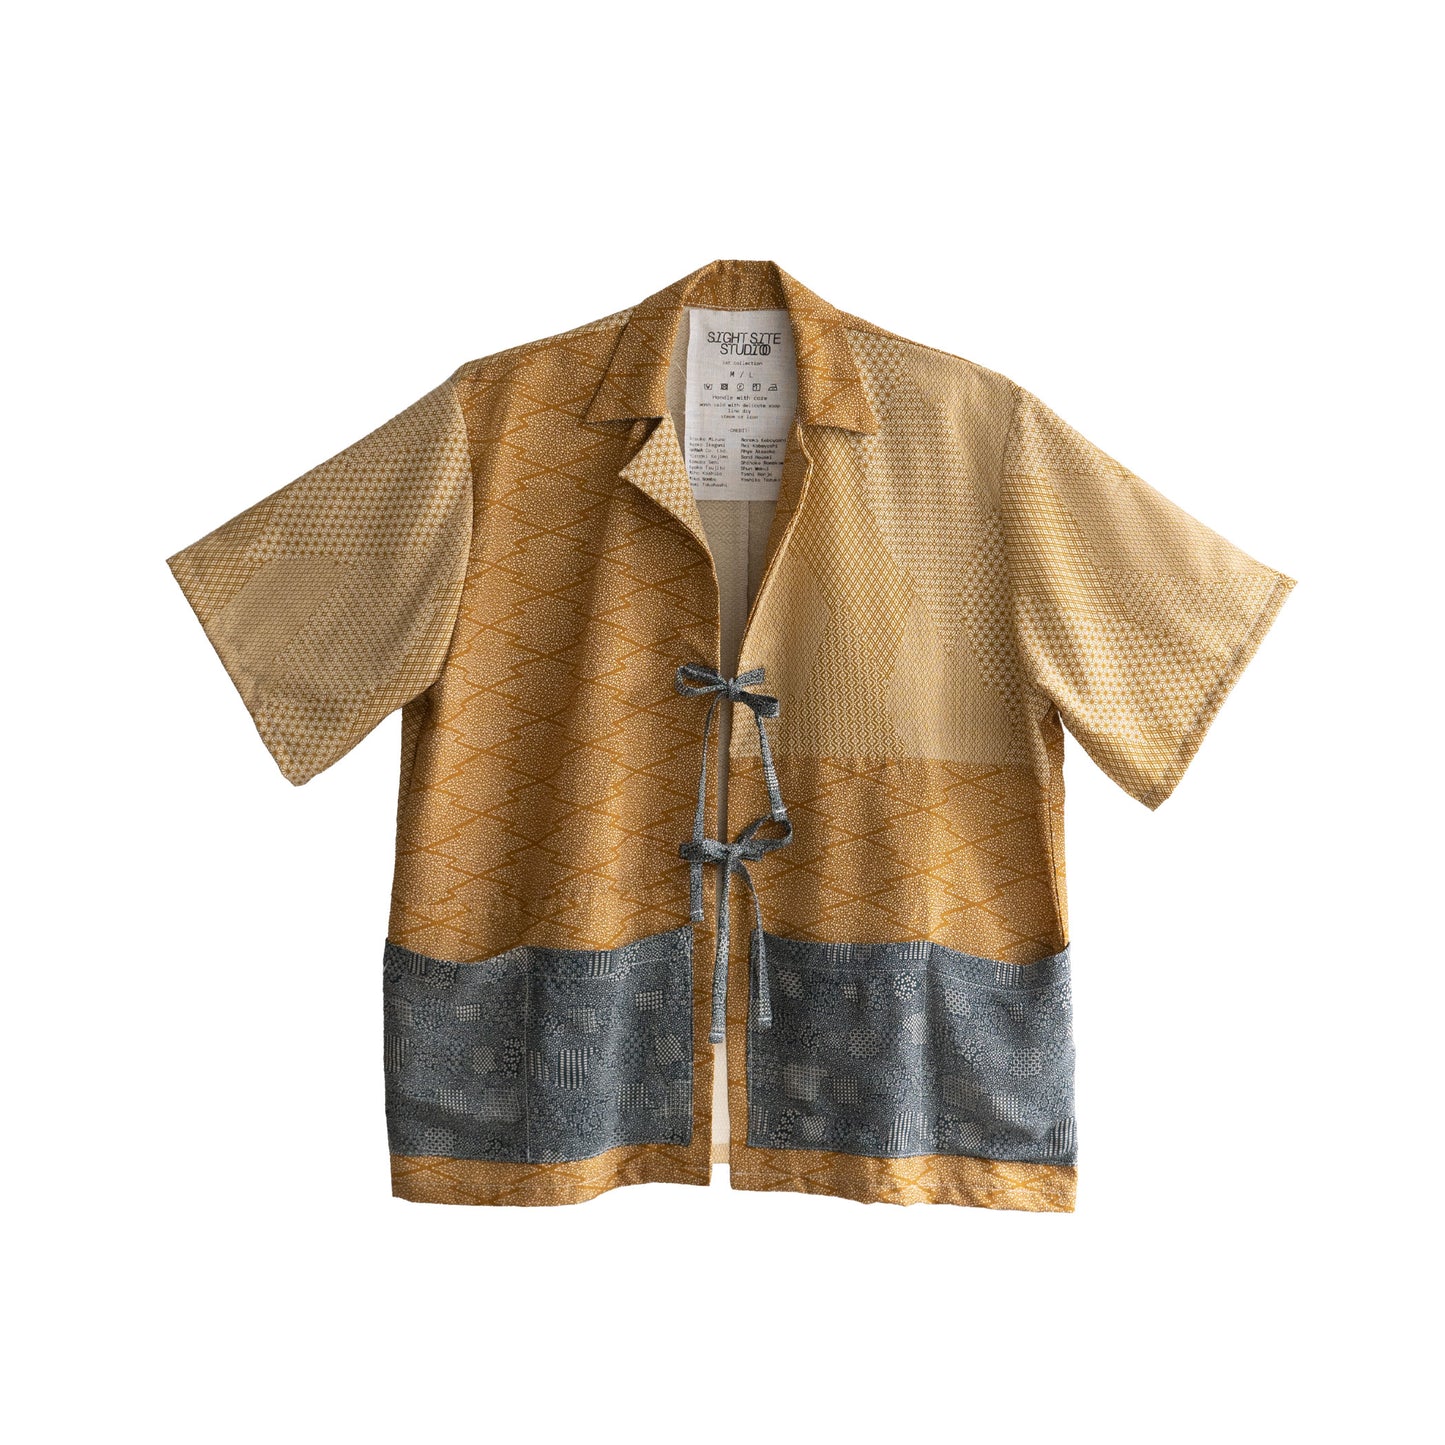 Kimono Working Shirts - Brown 04 M